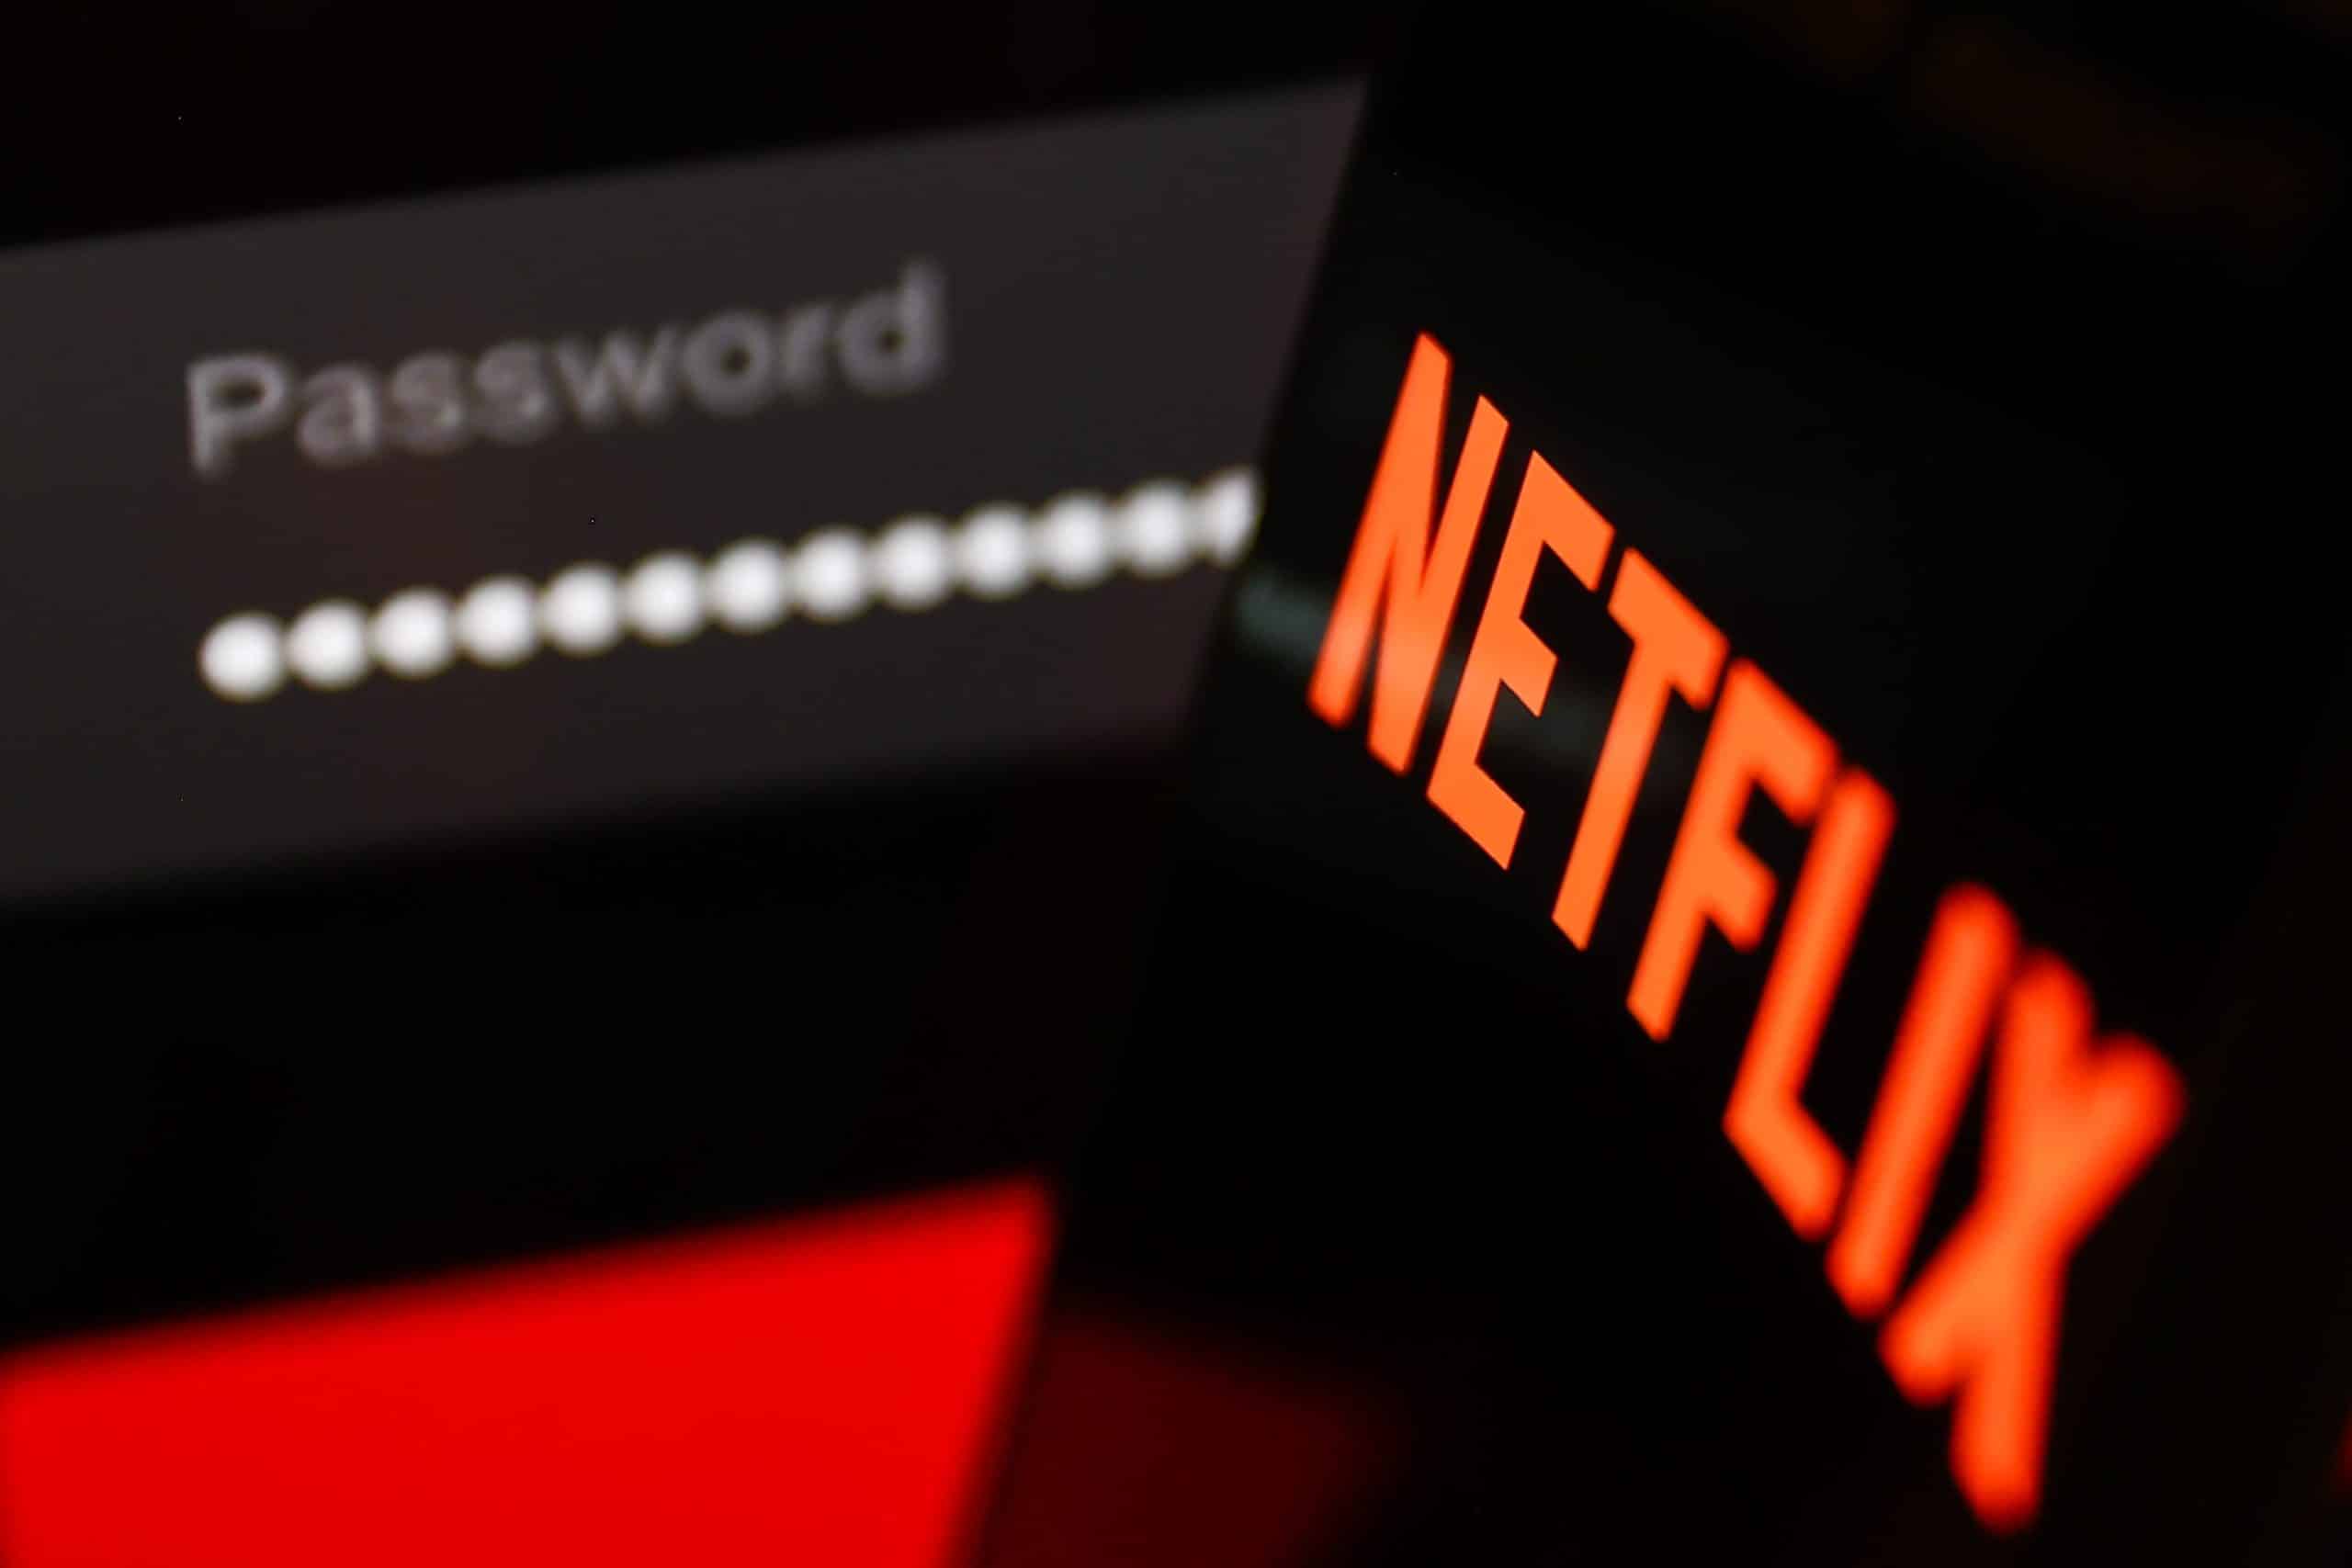 Netflix’s password